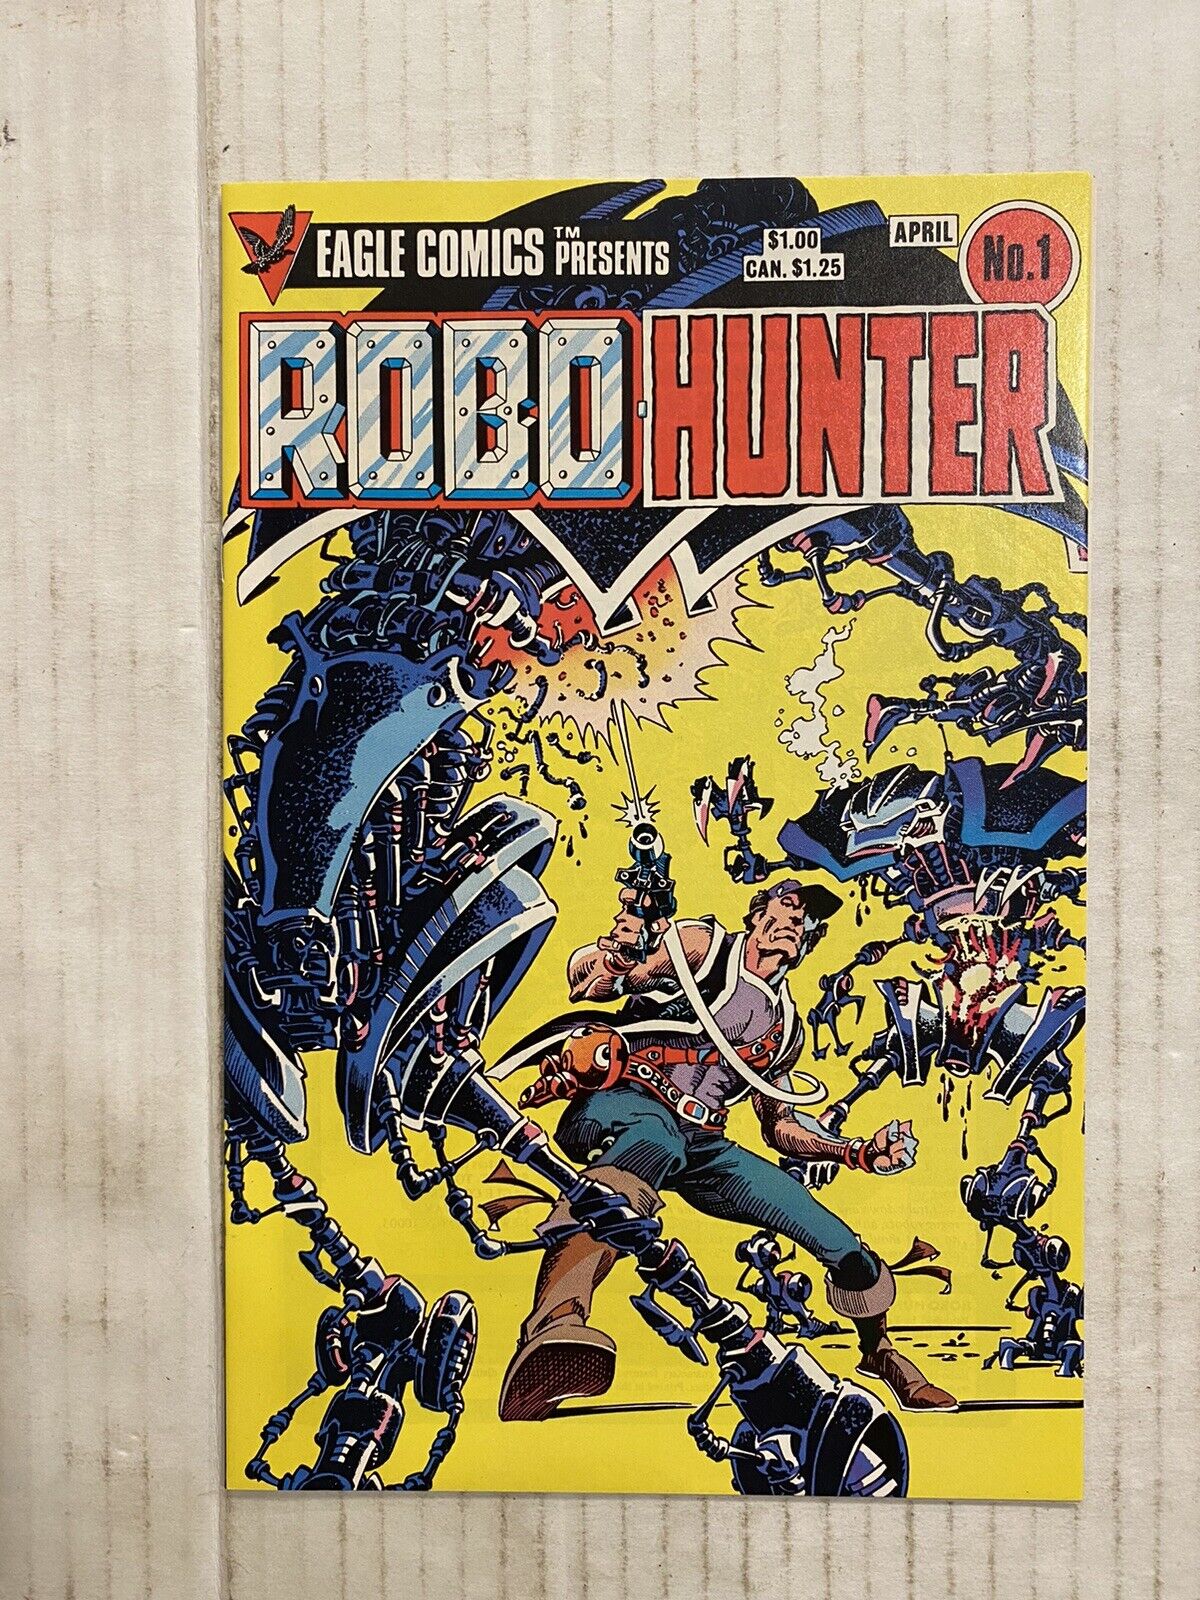 EAGLE COMICS Presents Robo Hunter Vol 1 April 1984 Comic Book Higher Grade